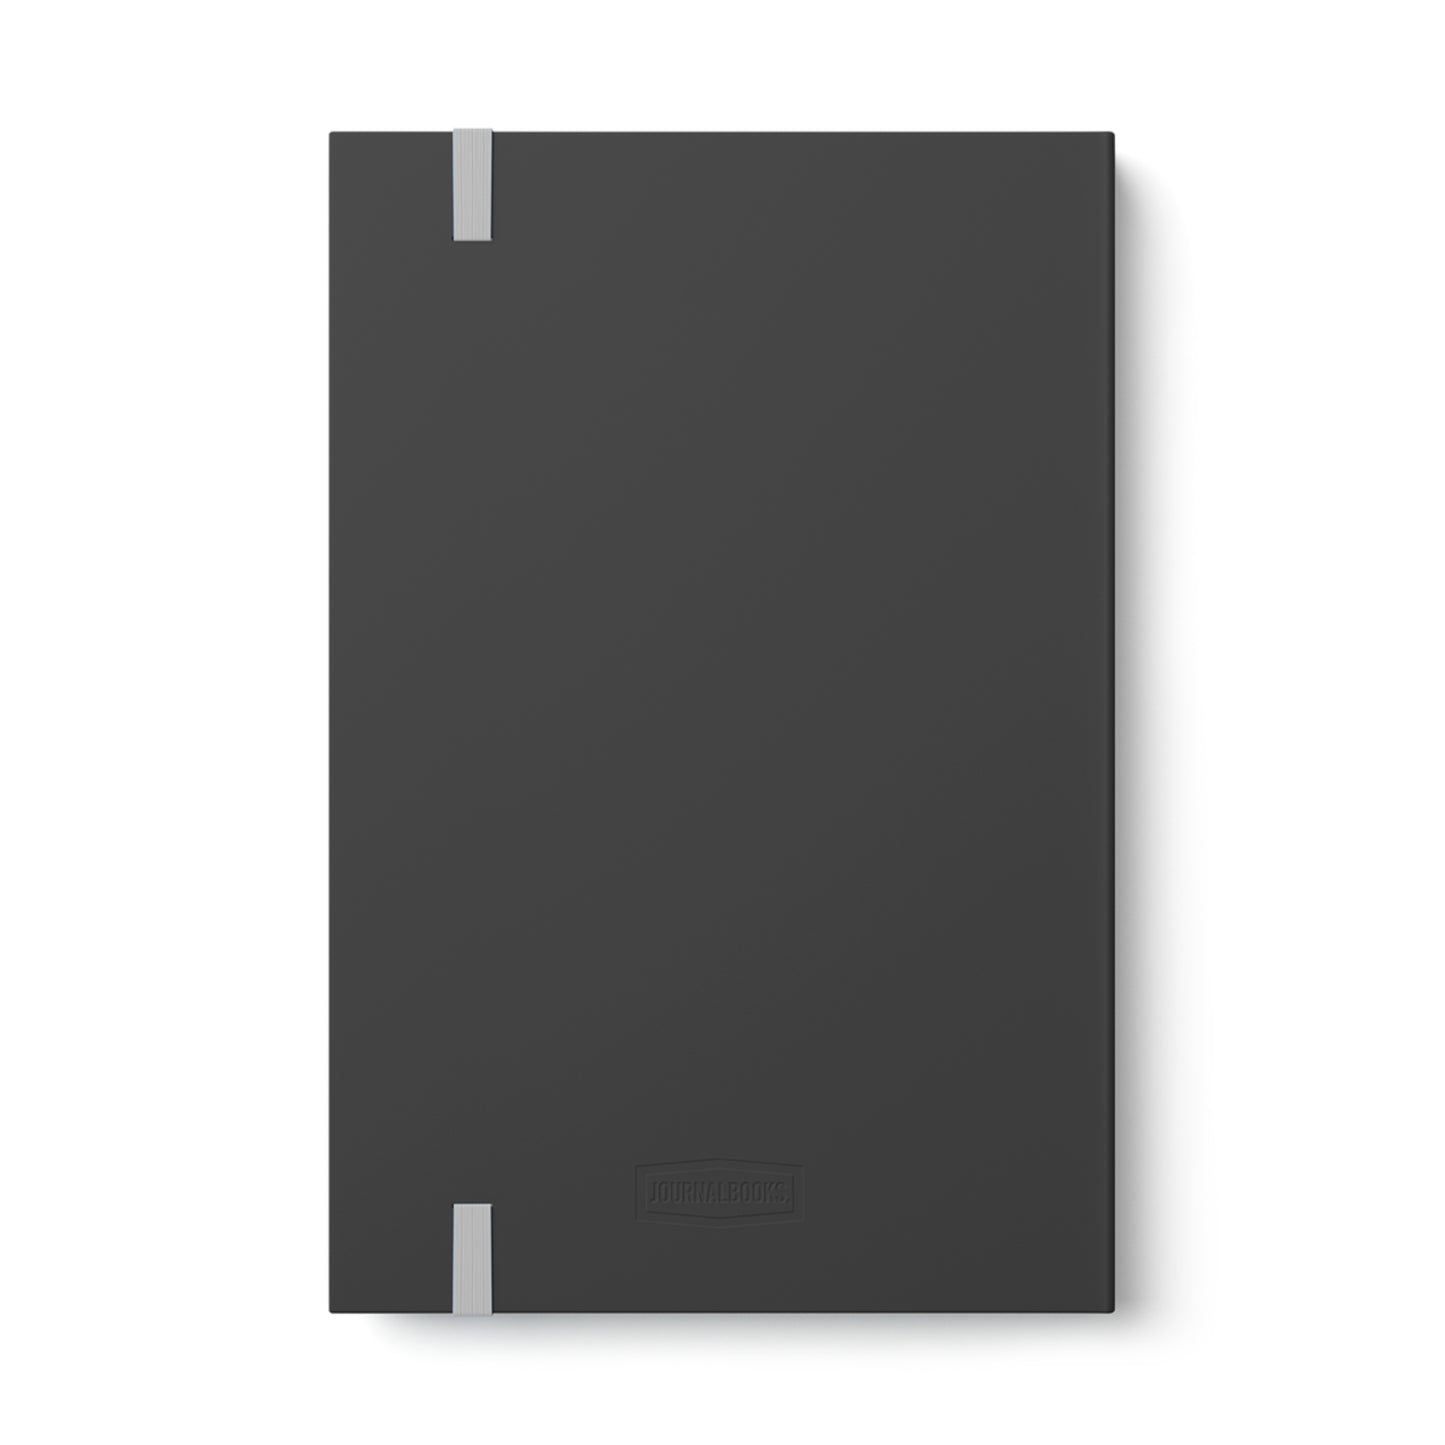 Raven & Skull - Notebook - Ruled